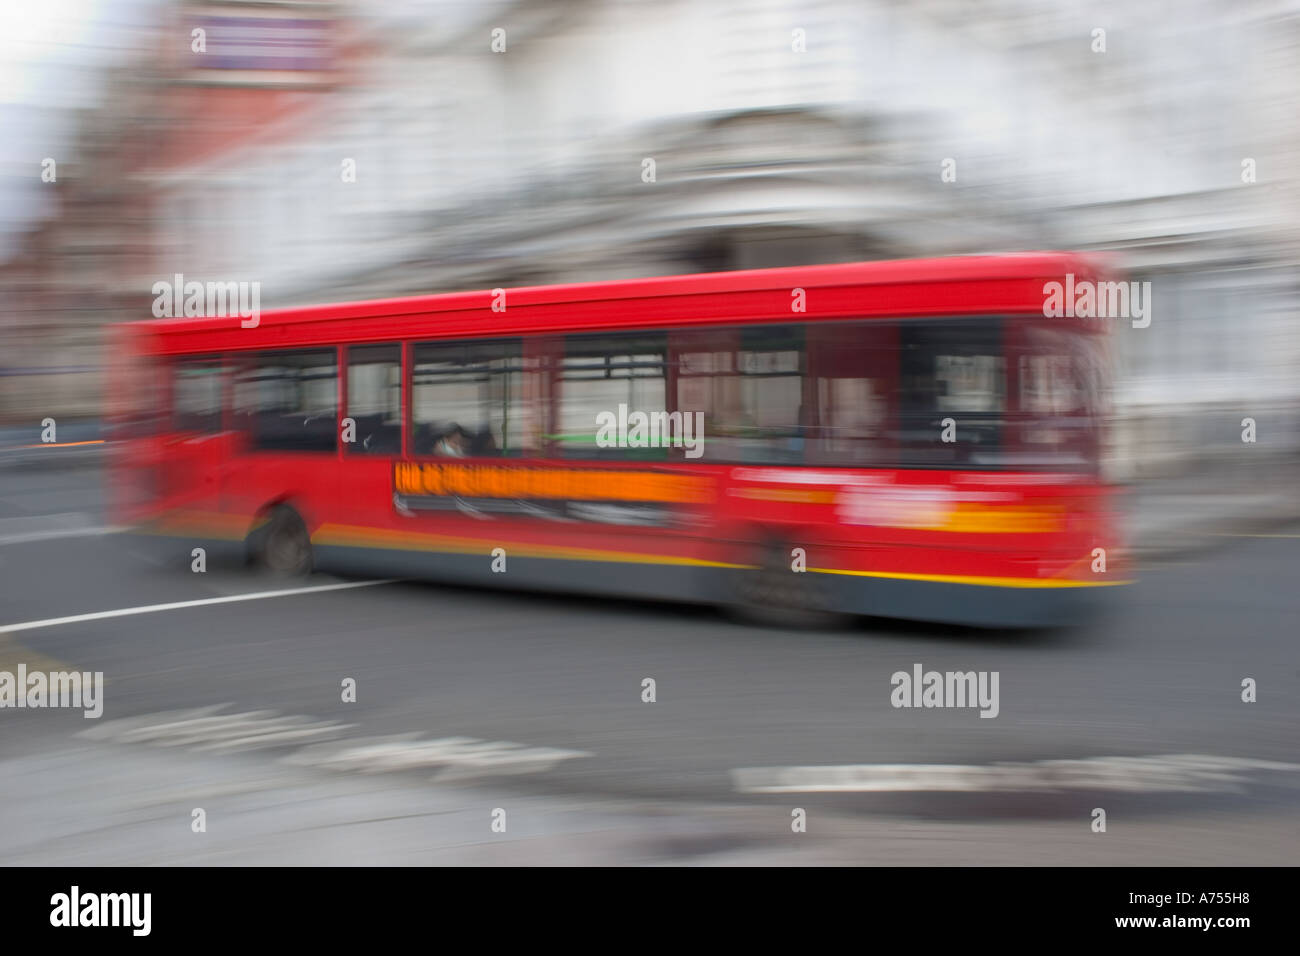 Un bus rouge de Londres voyages passé à très grande vitesse Banque D'Images